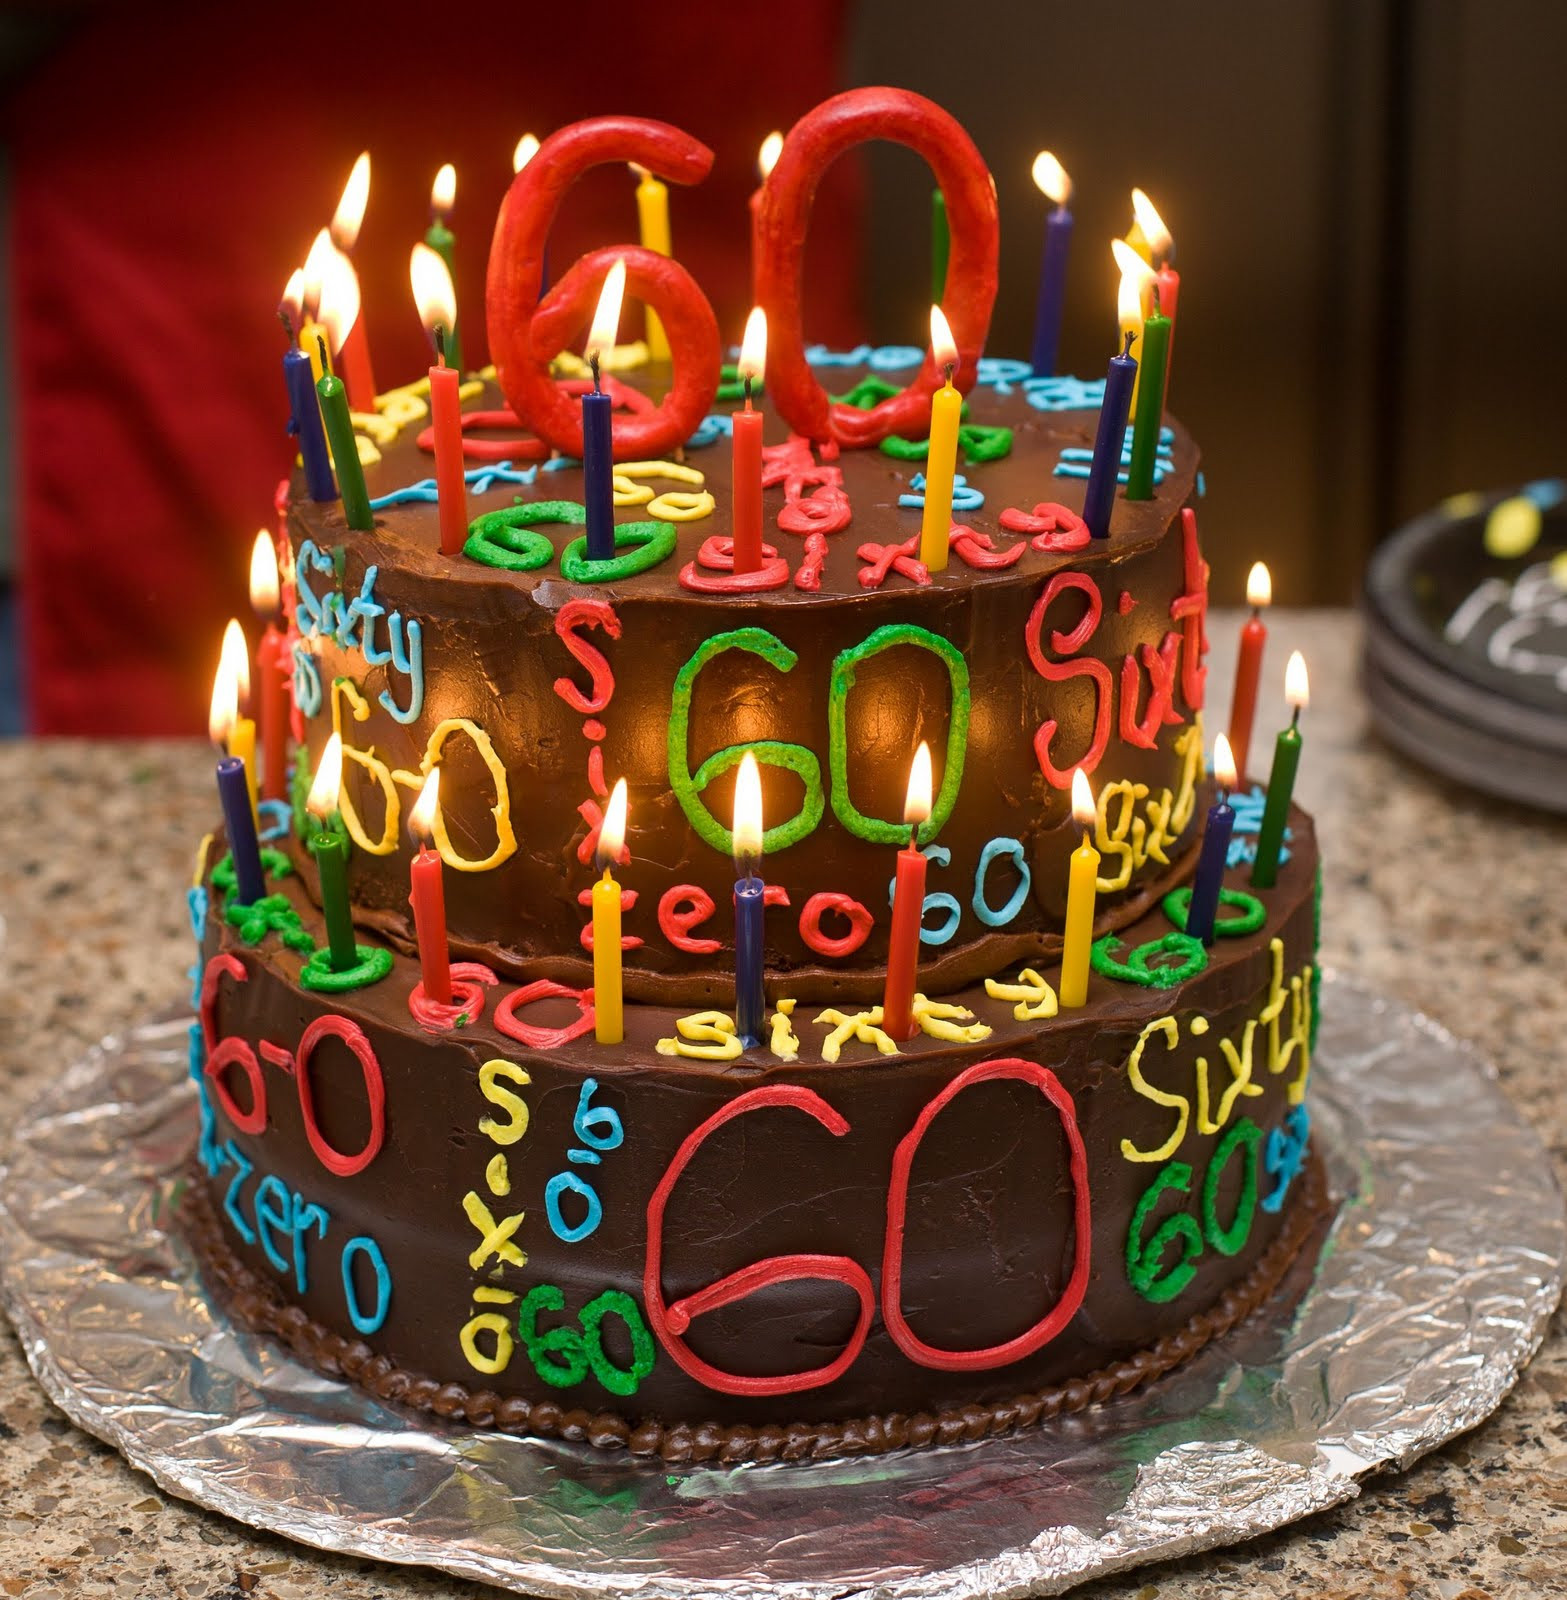 Pictures Of Happy Birthday Cakes
 The Happy Caker Happy 60th Birthday